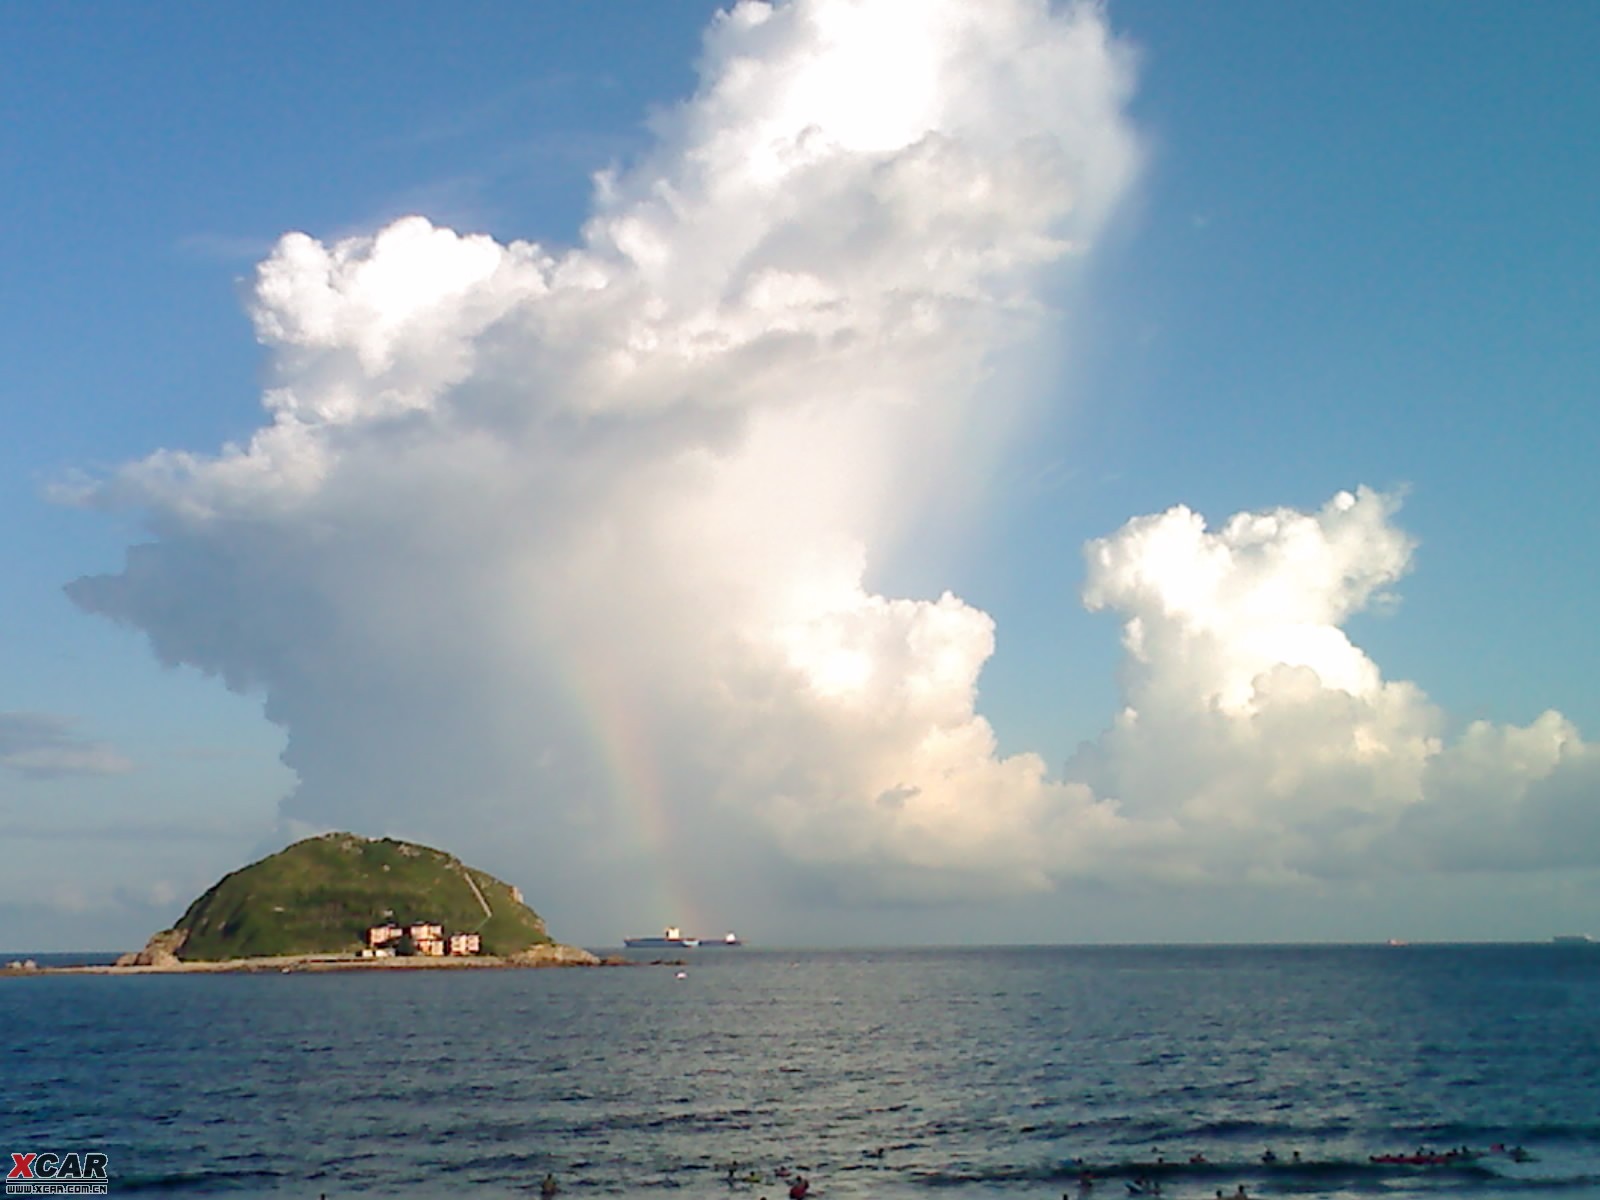 见到海上彩虹,真美,激动!